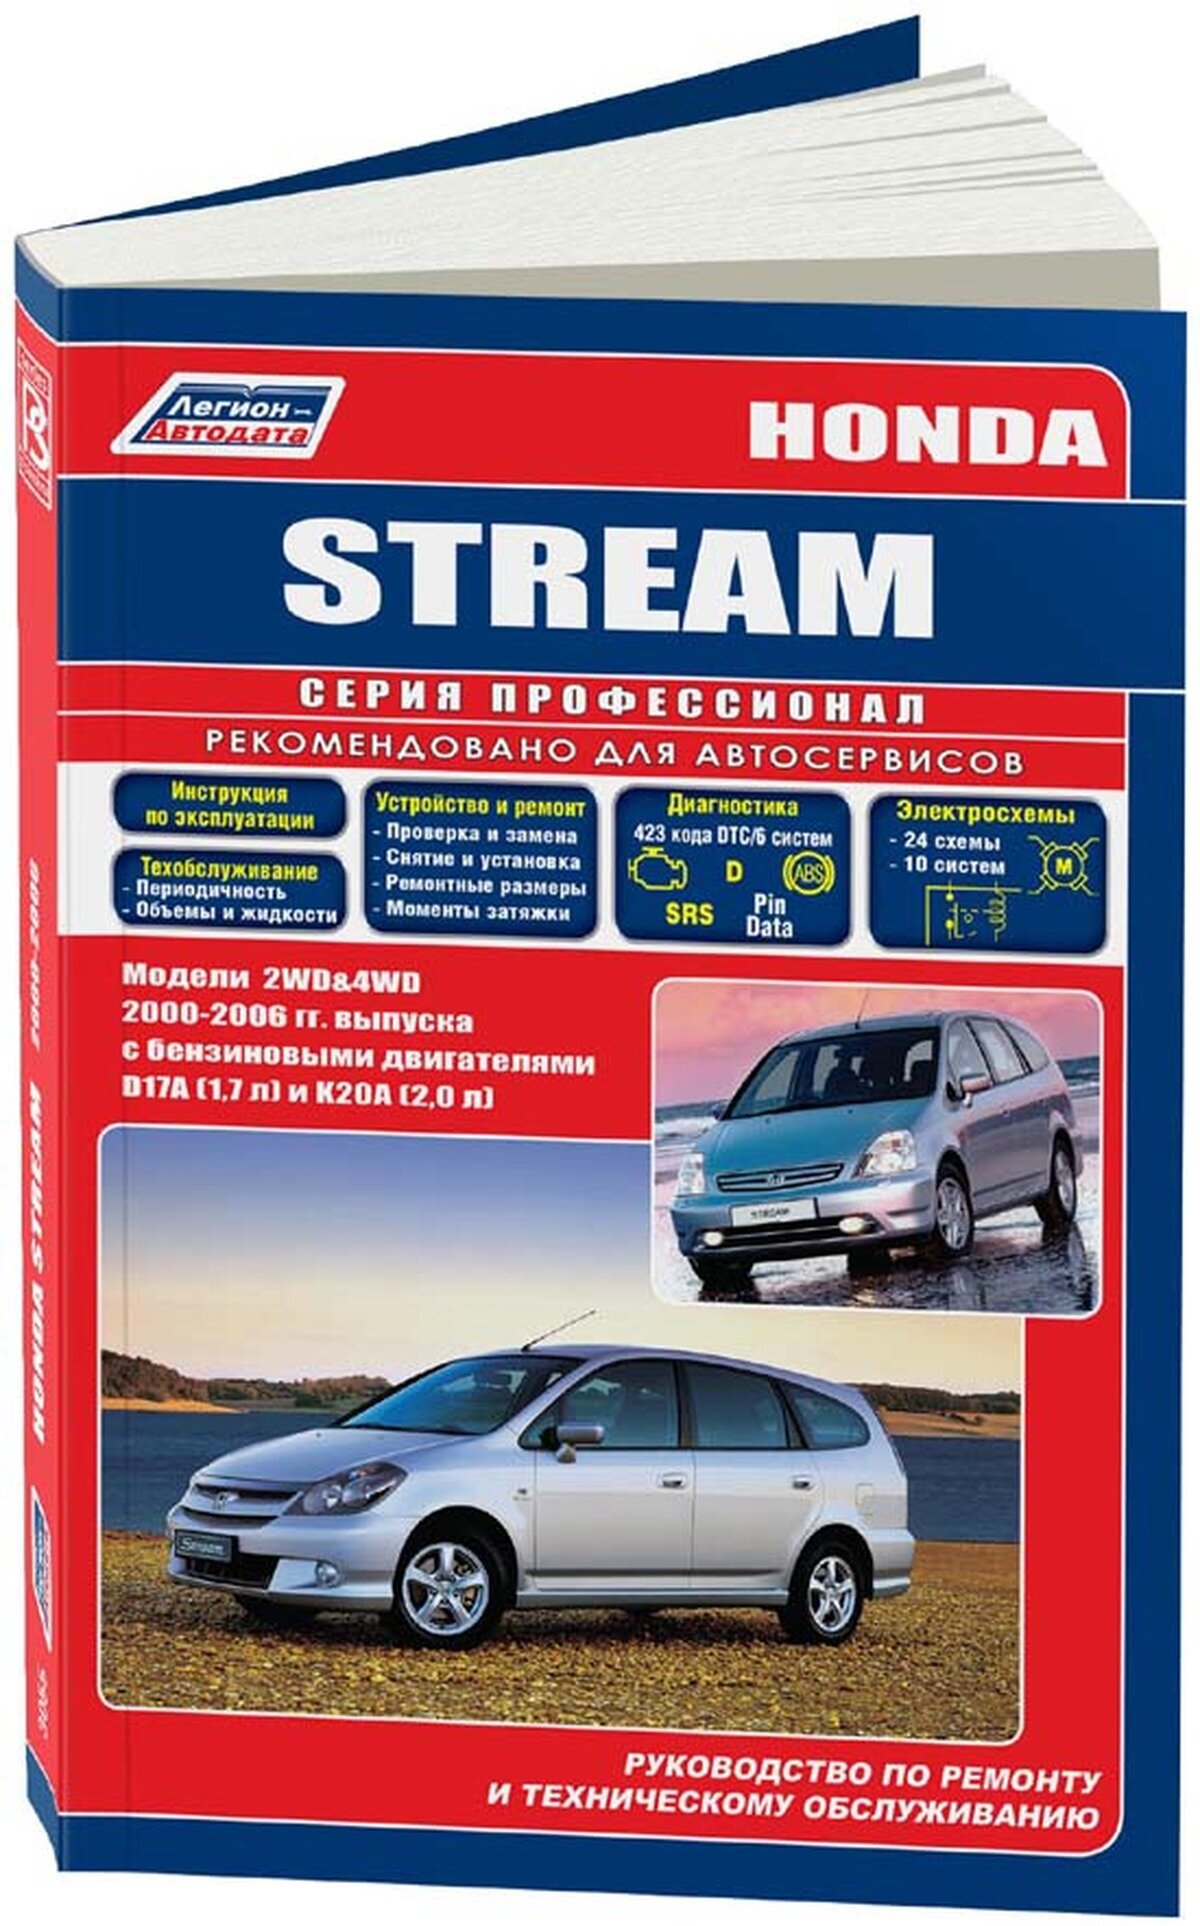 Автокнига: руководство / инструкция по ремонту и эксплуатации HONDA STREAM (хонда стрим) 2WD и 4WD бензин с 2000 года выпуска, 5-88850-311-8, издательство Легион-Aвтодата